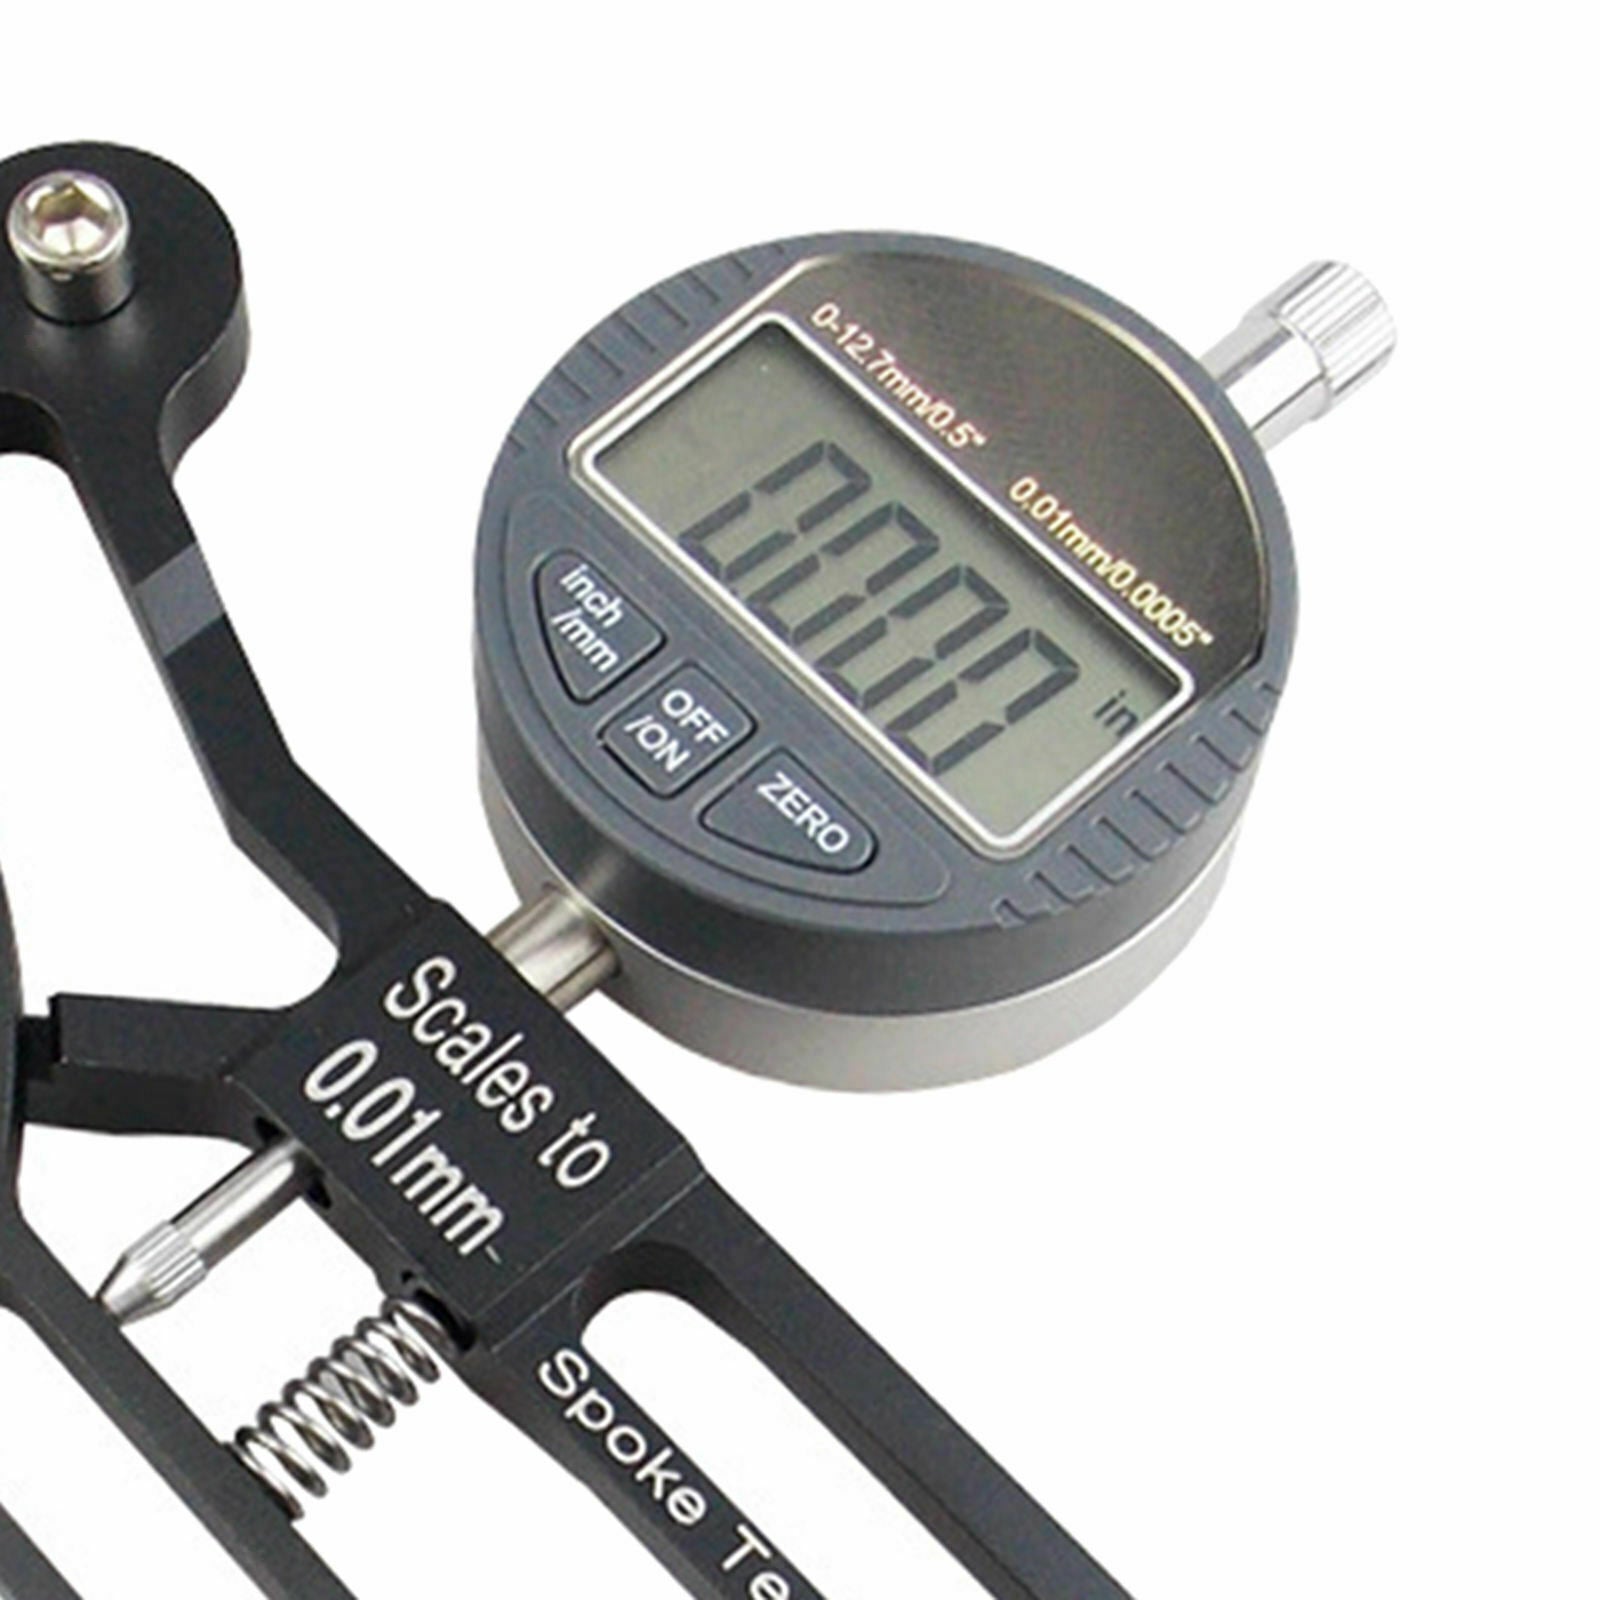 Bike Spoke Tension Meter Deluxe Bicycle Spoke Tensiometer Watch Wheel Tool Black